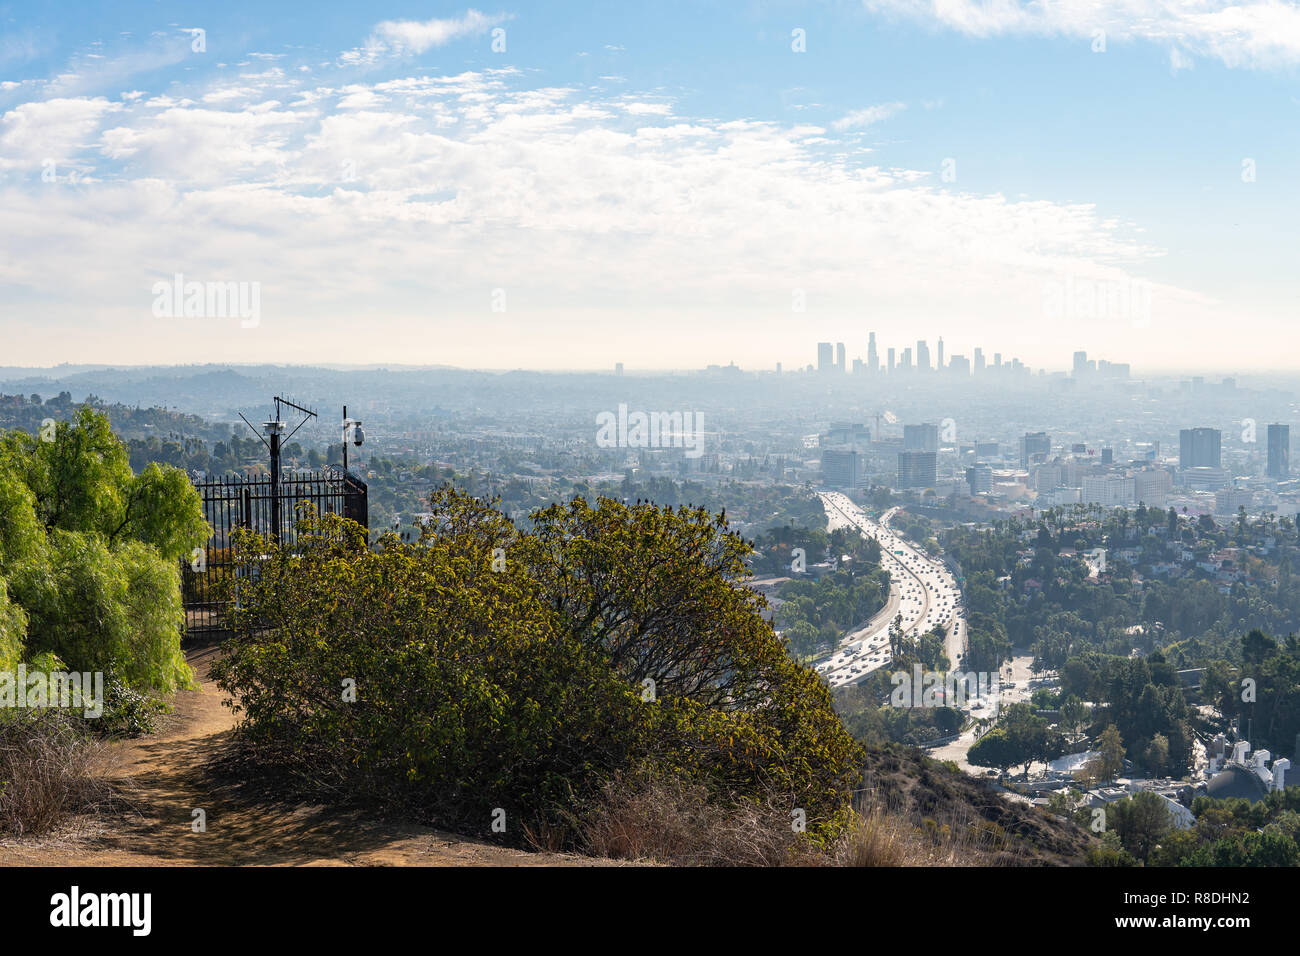 Anzeigen von Los Angeles durch die Hügel von Hollywood. Die Stadt LA. Hollywood Bowl. Warmen sonnigen Tag. Schöne Wolken im blauen Himmel. 101 Autobahn Verkehr. Stockfoto